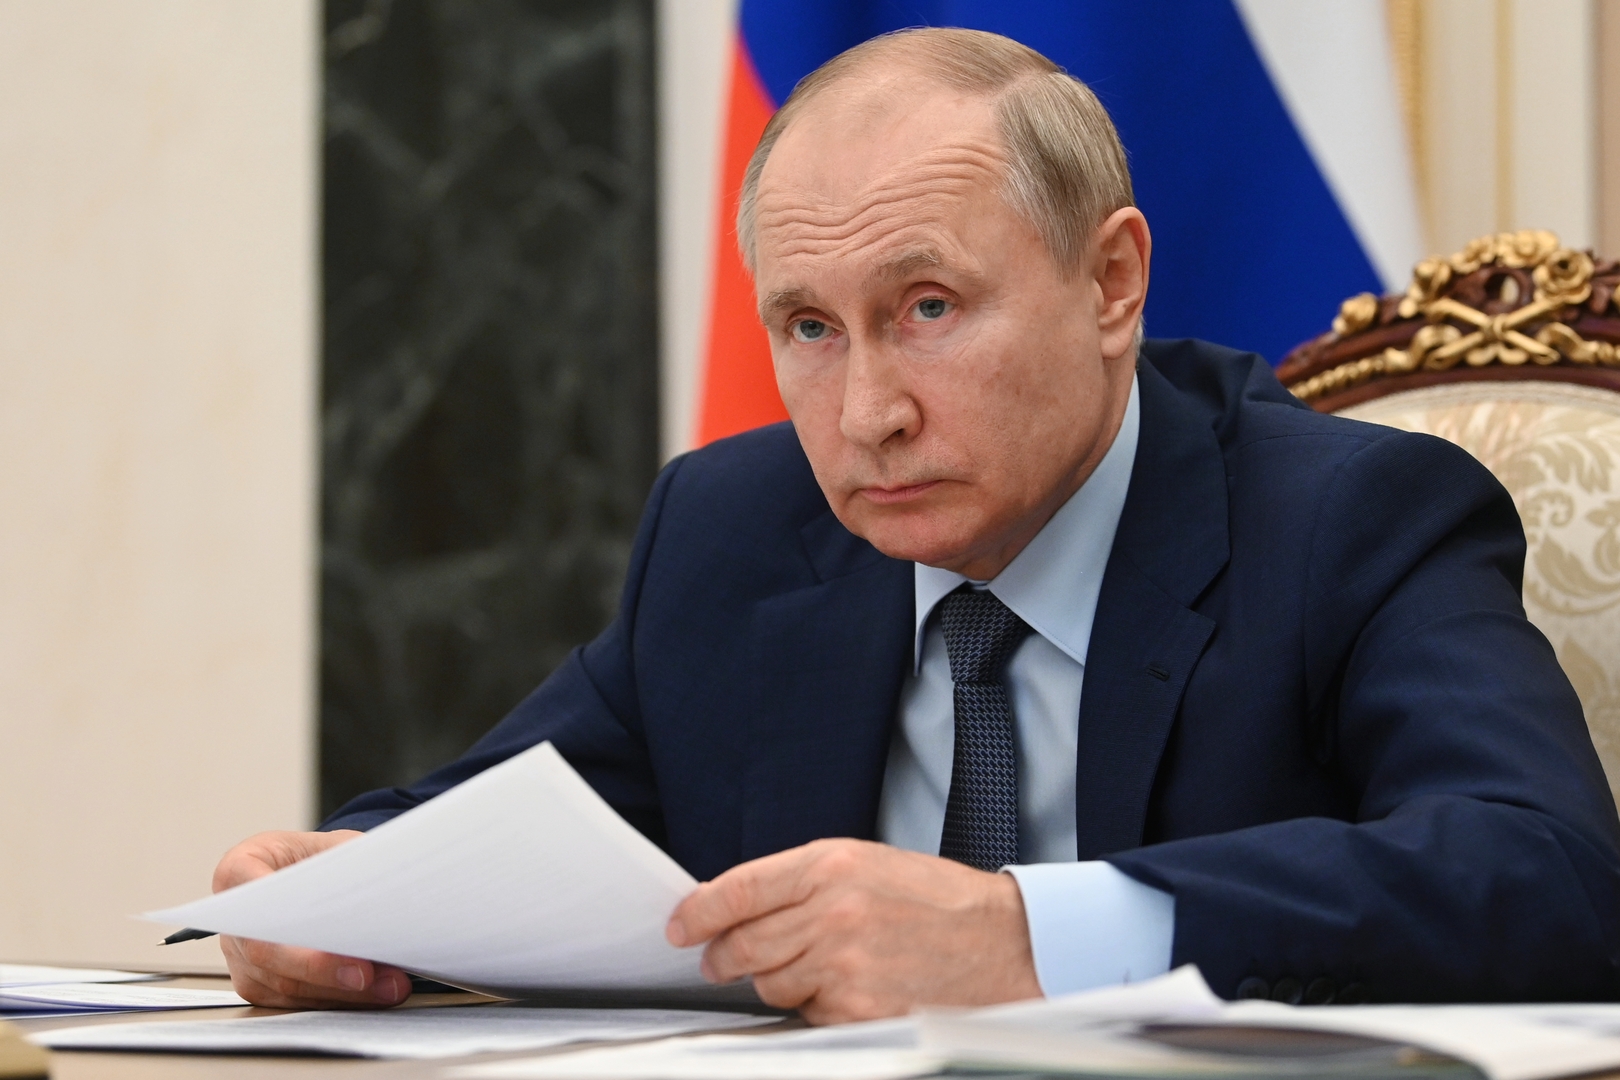 بوتين يعلق على الوضع الديموغرافي في روسيا